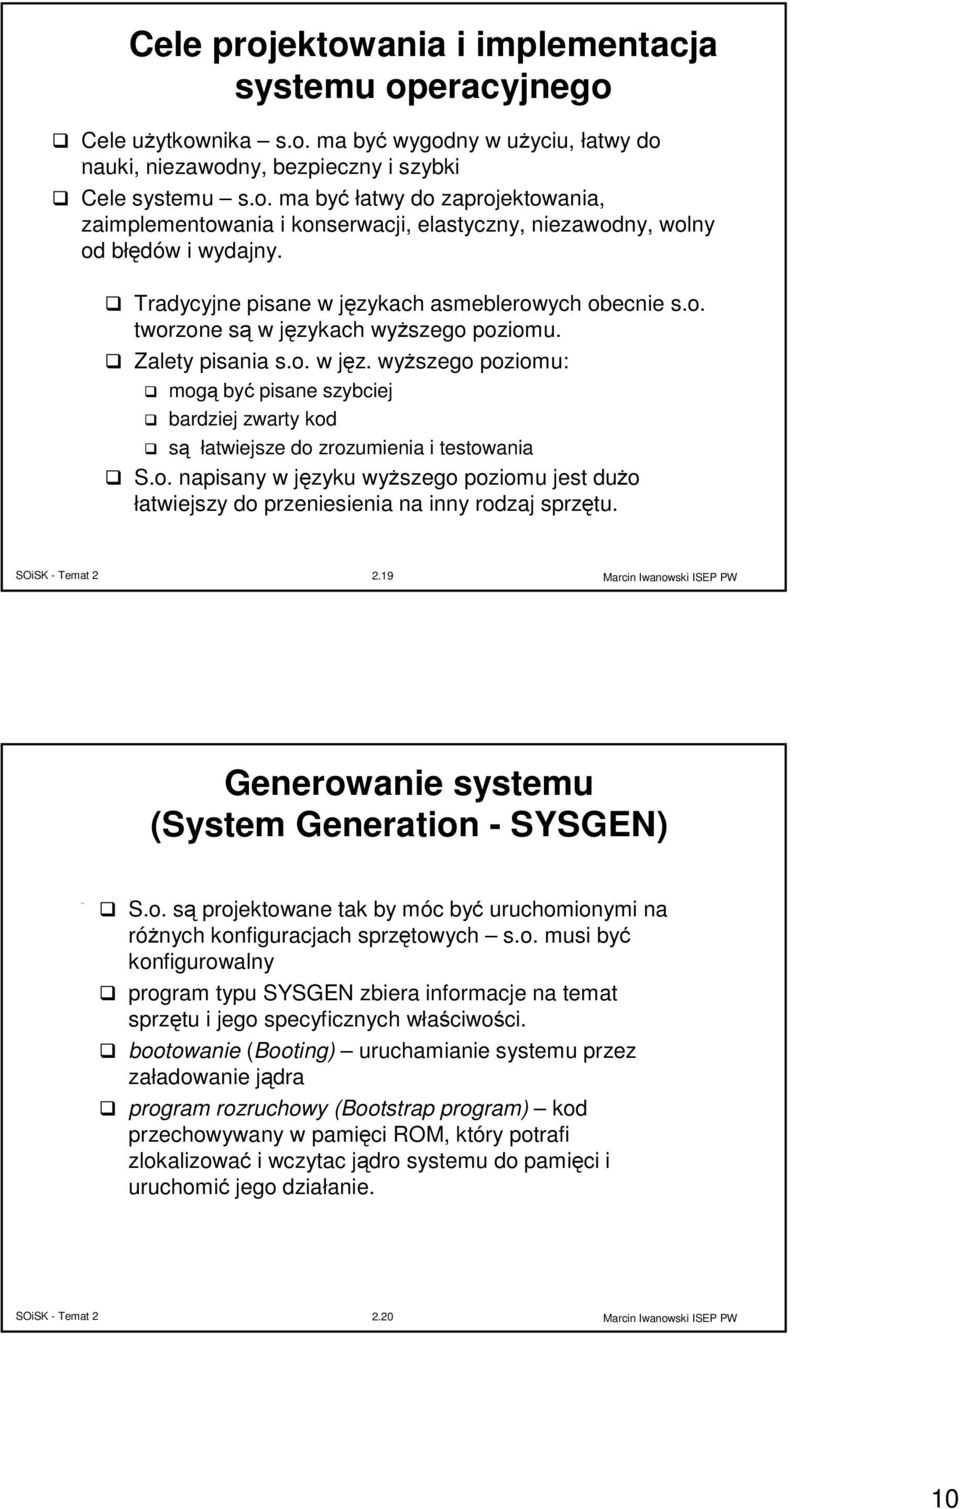 o. napisany w języku wyższego poziomu jest dużo łatwiejszy do przeniesienia na inny rodzaj sprzętu. 2.19 Generowanie systemu (System Generation - SYSGEN) S.o. są projektowane tak by móc być uruchomionymi na różnych konfiguracjach sprzętowych s.